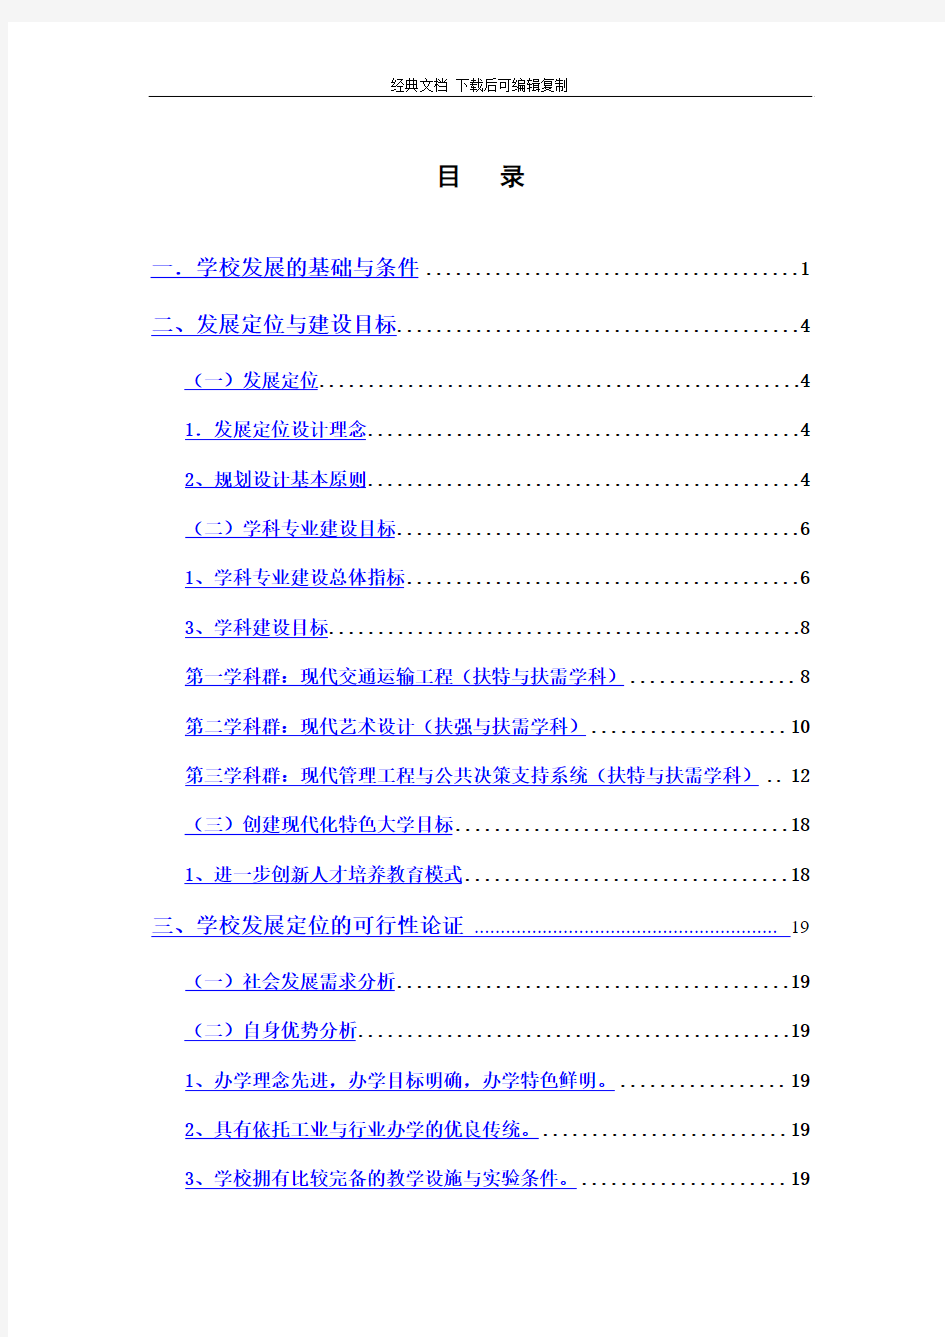 上海工程技术大学发展定位规划报告(1)